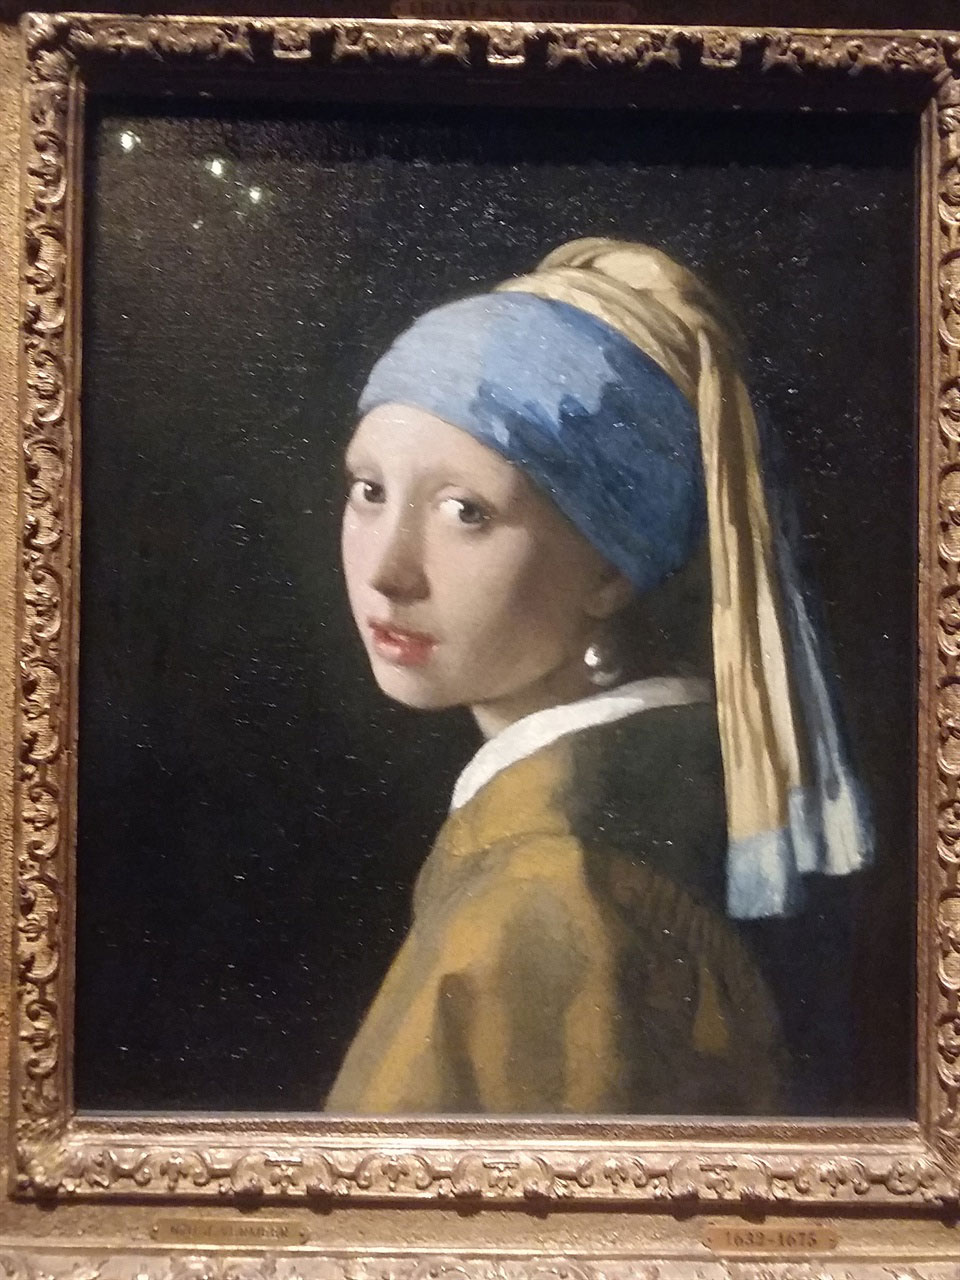 네덜란드의 모나리자라고 불리는 베르메르의 ‘진주목걸이를 한 소녀’